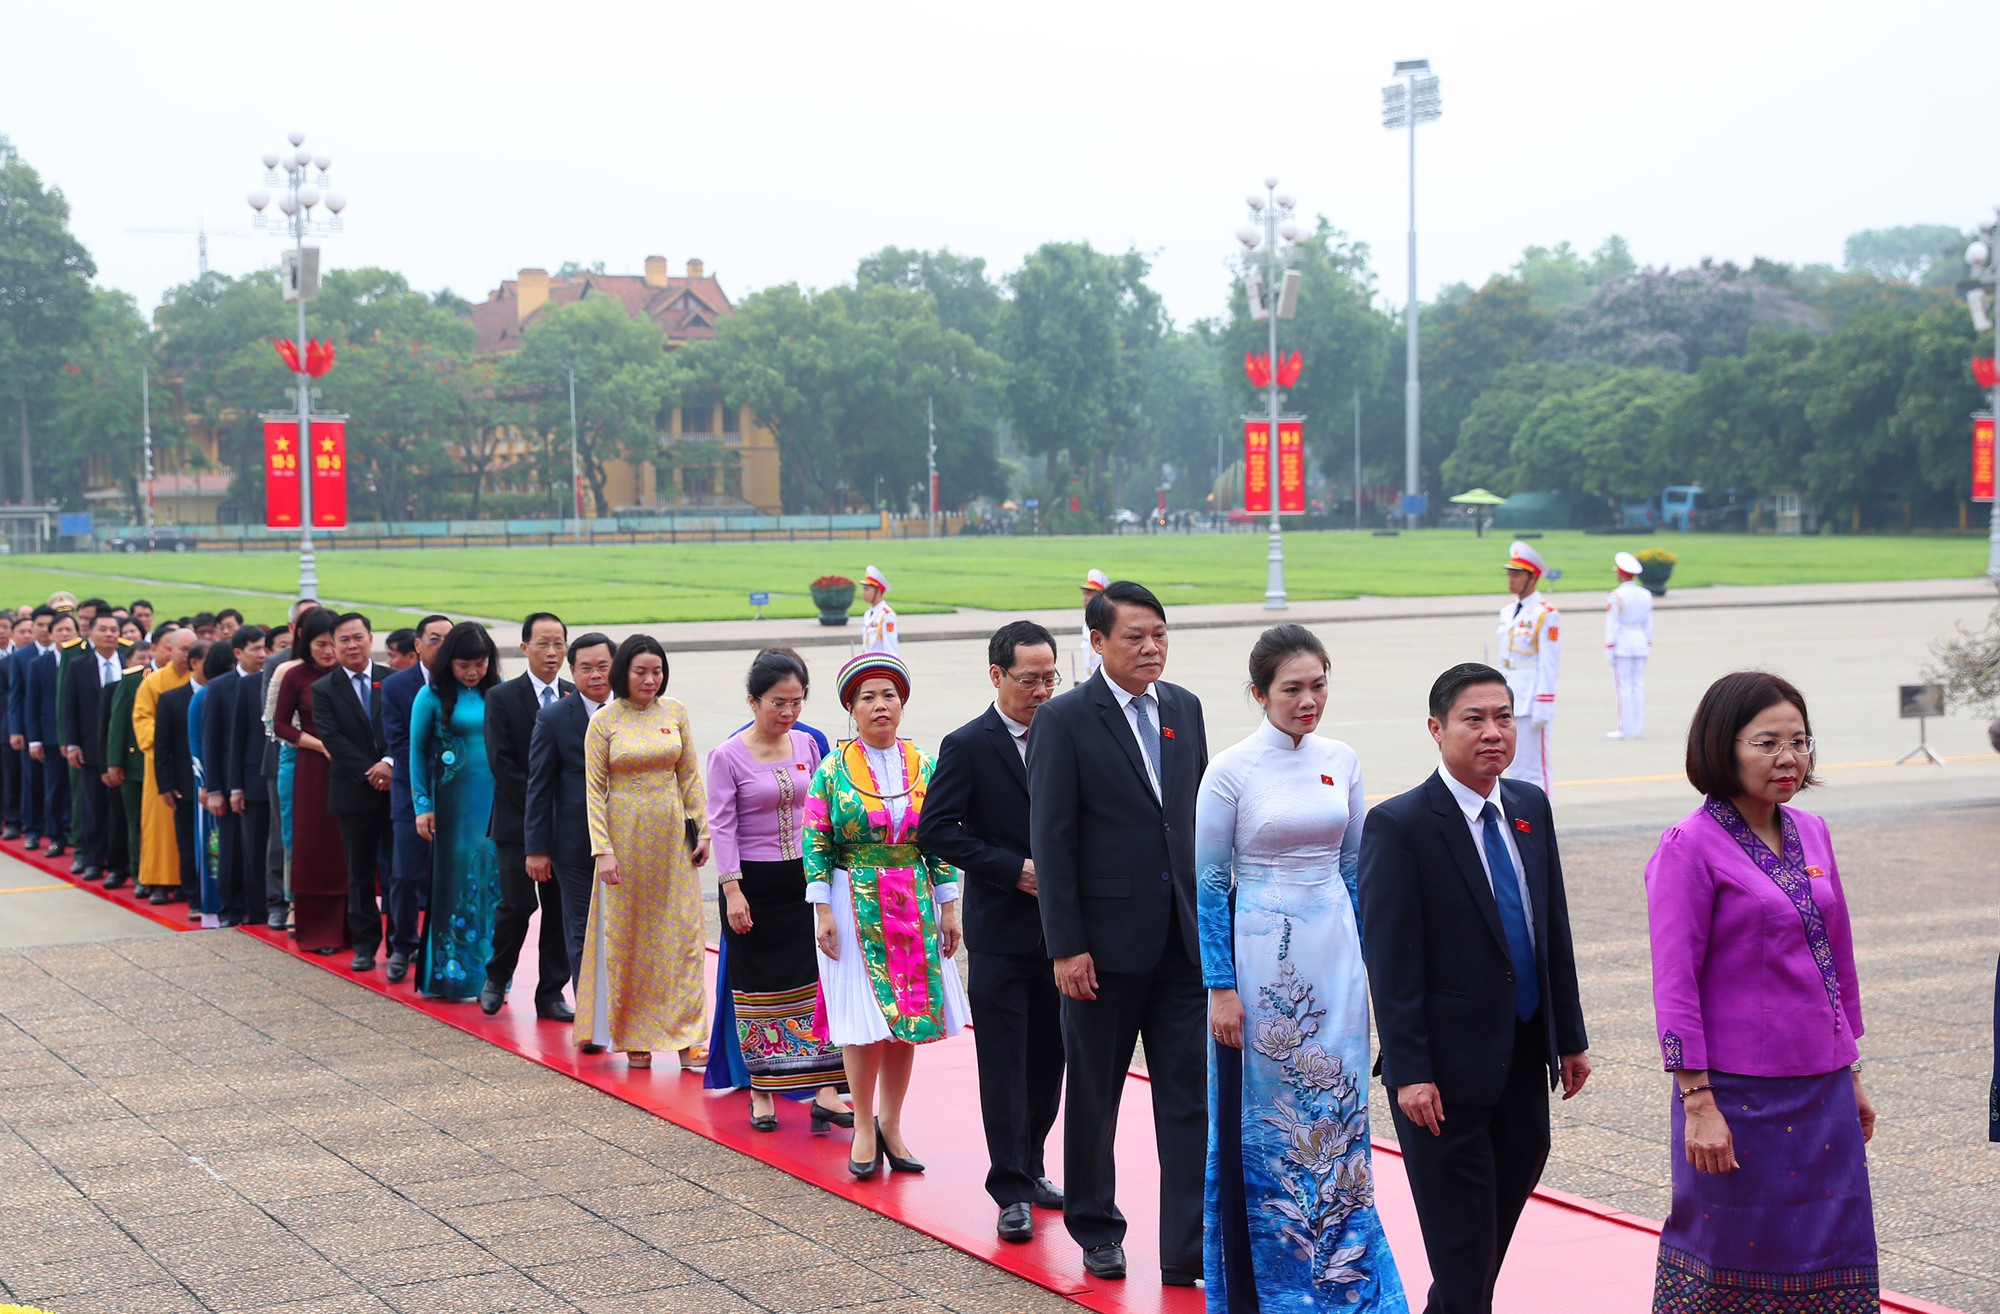 Lãnh đạo Đảng, Nhà nước và các đại biểu Quốc hội vào Lăng viếng Chủ tịch Hồ Chí Minh trước khai mạc Kỳ họp thứ 7, Quốc hội khóa XV - Ảnh 7.